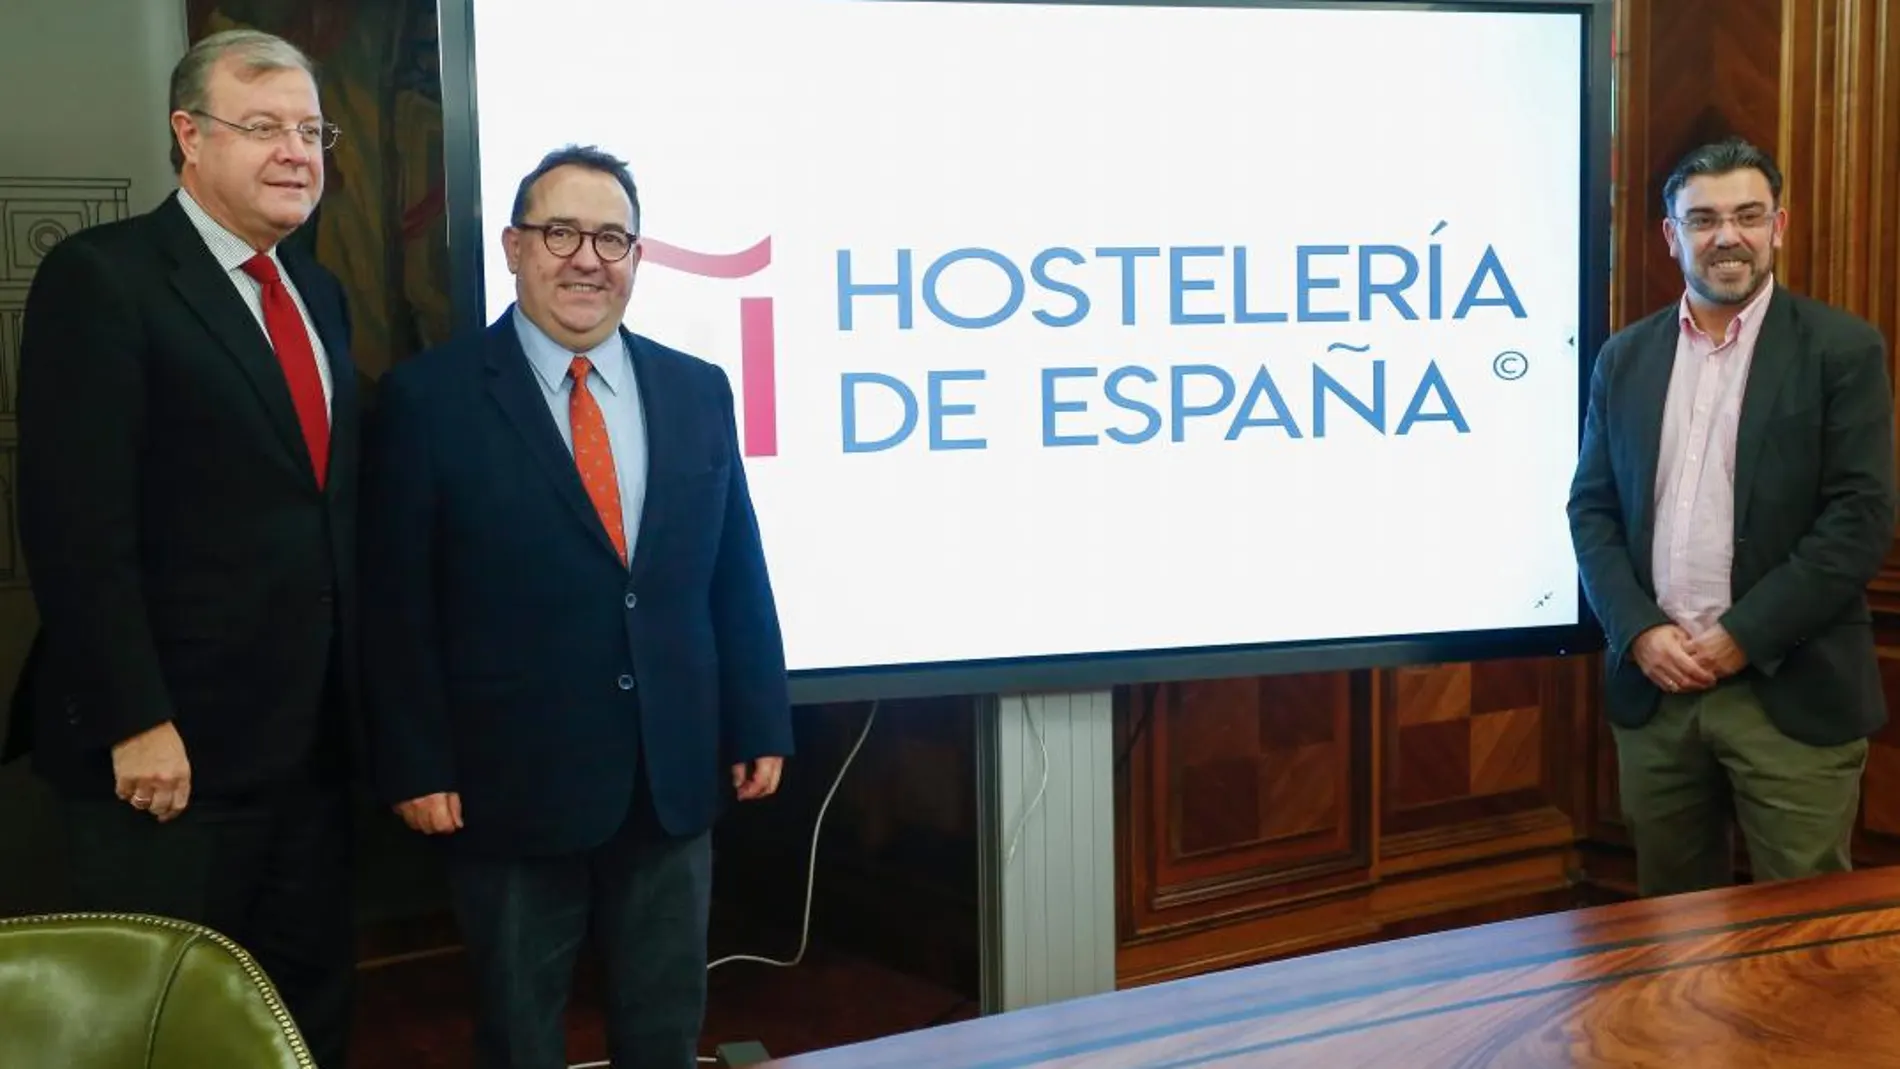 El alcalde de León, Antonio Silván, y el presidente de Hostelería de España, José Luis Yzuel, presentan la XII edición de los Premios Nacionales de Hostelería. Junto a ellos, el concejal de Comercio y Consumo, Pedro Llamas (D)